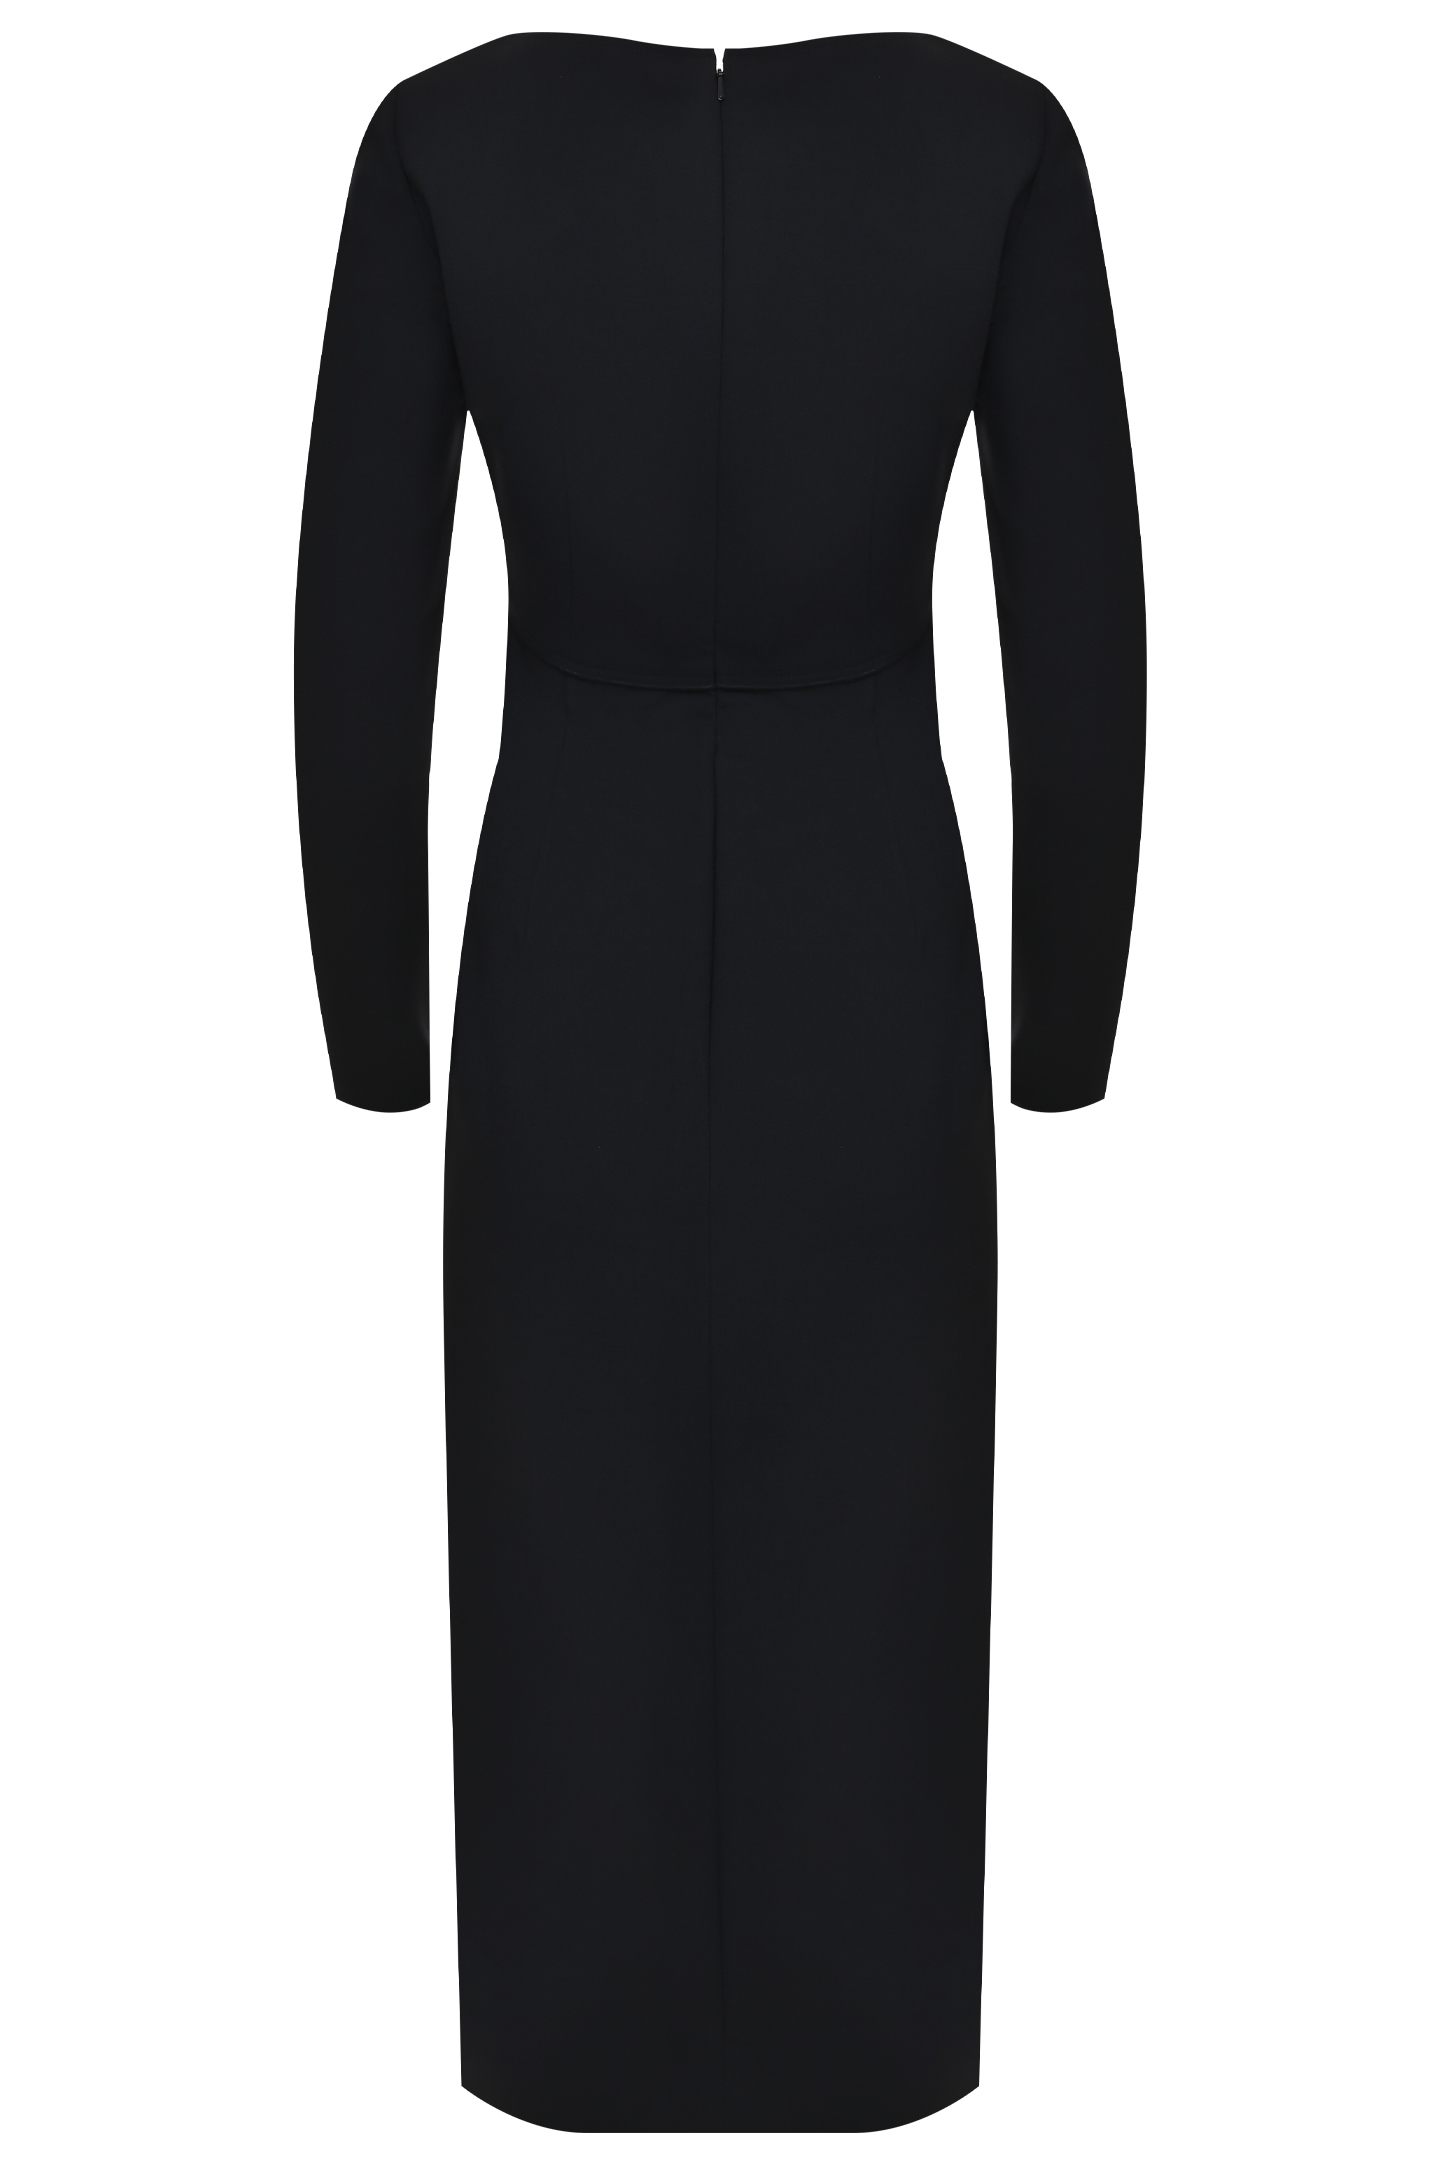 Платье CAROLINA HERRERA S2111N513, цвет: Черный, Женский